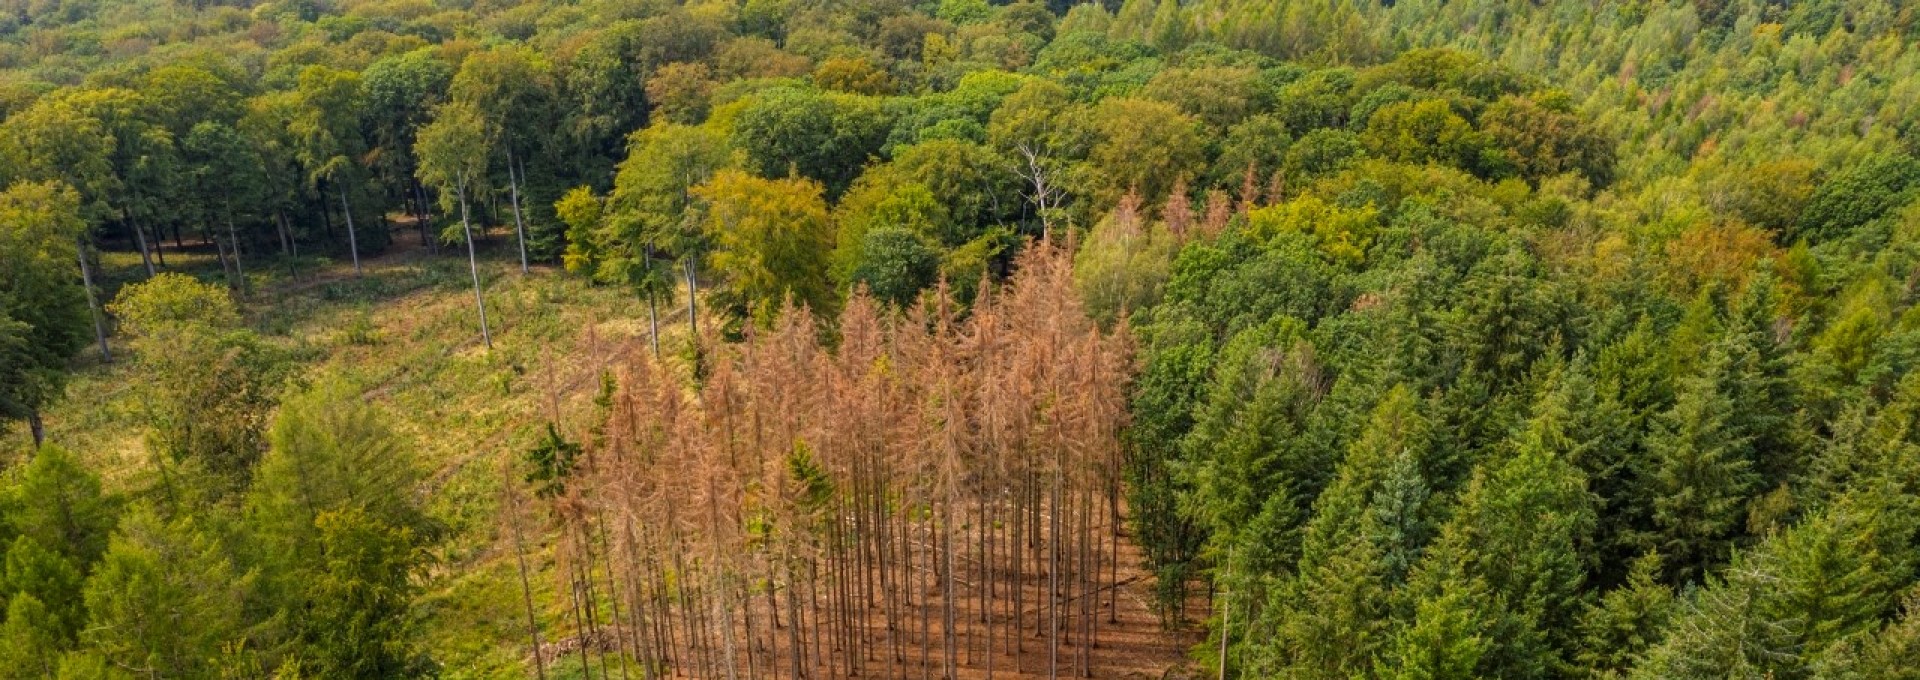 Luftaufnahme Wald. Zwischen grünen Nadelbäumen sind vertrocknete braune Bäume zu sehen